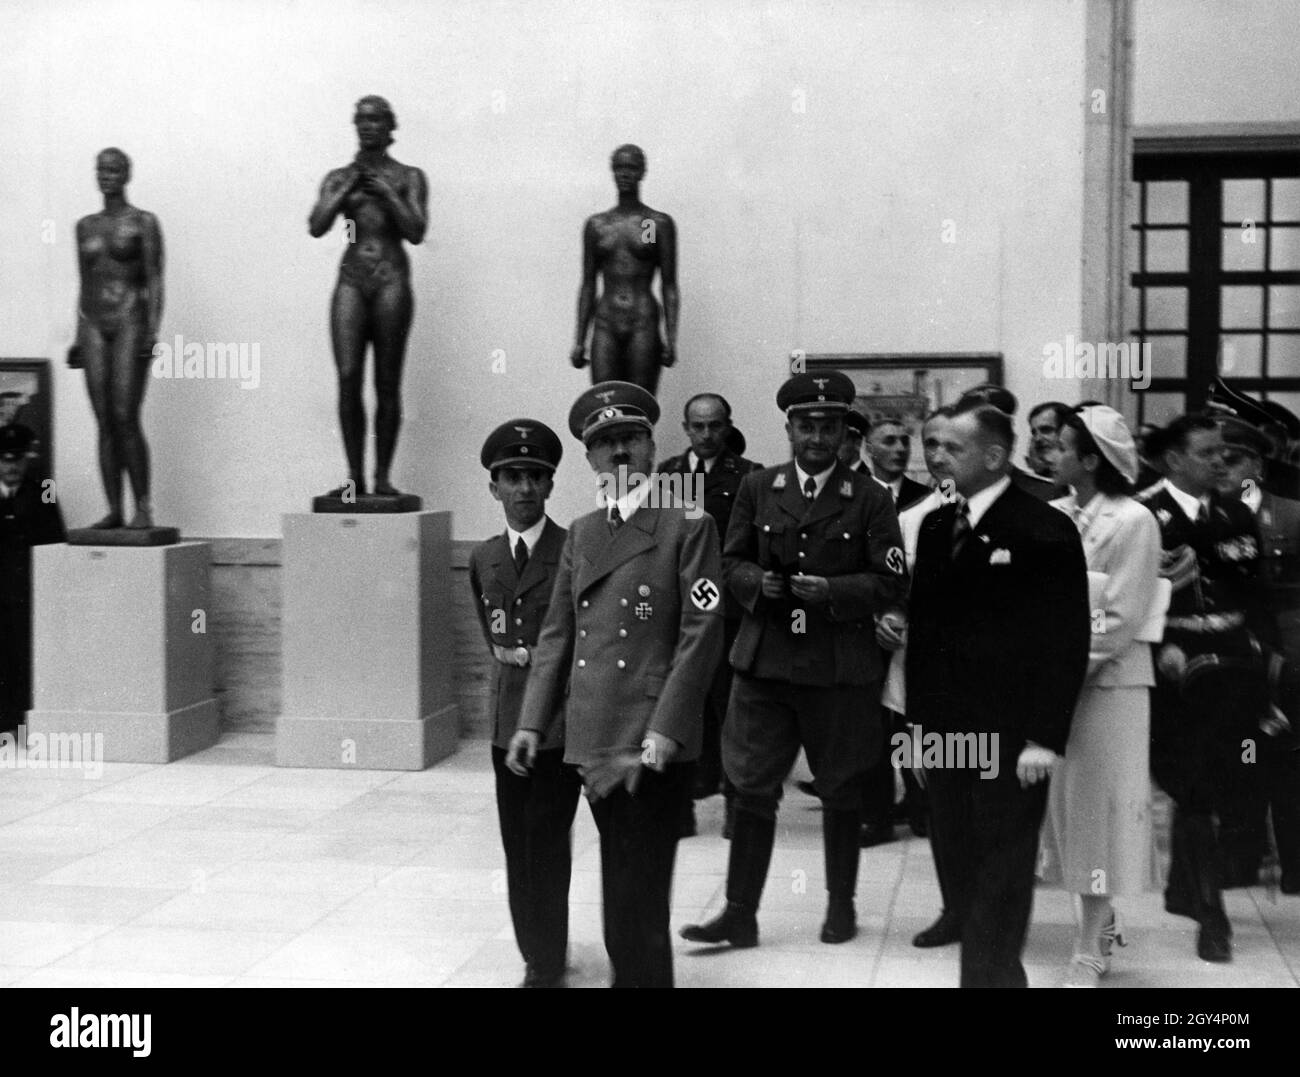 « Adolf Hitler lors d'une visite de la « Grande exposition d'art allemand 1938 » dans la Haus der Deutschen Kunst (aujourd'hui Haus der Kunst) accompagnée de Joseph Goebbels (à gauche).La dame en blanc est Gerdy Troost, avec l'adjudant Julius Schaub à sa droite.[traduction automatique]' Banque D'Images